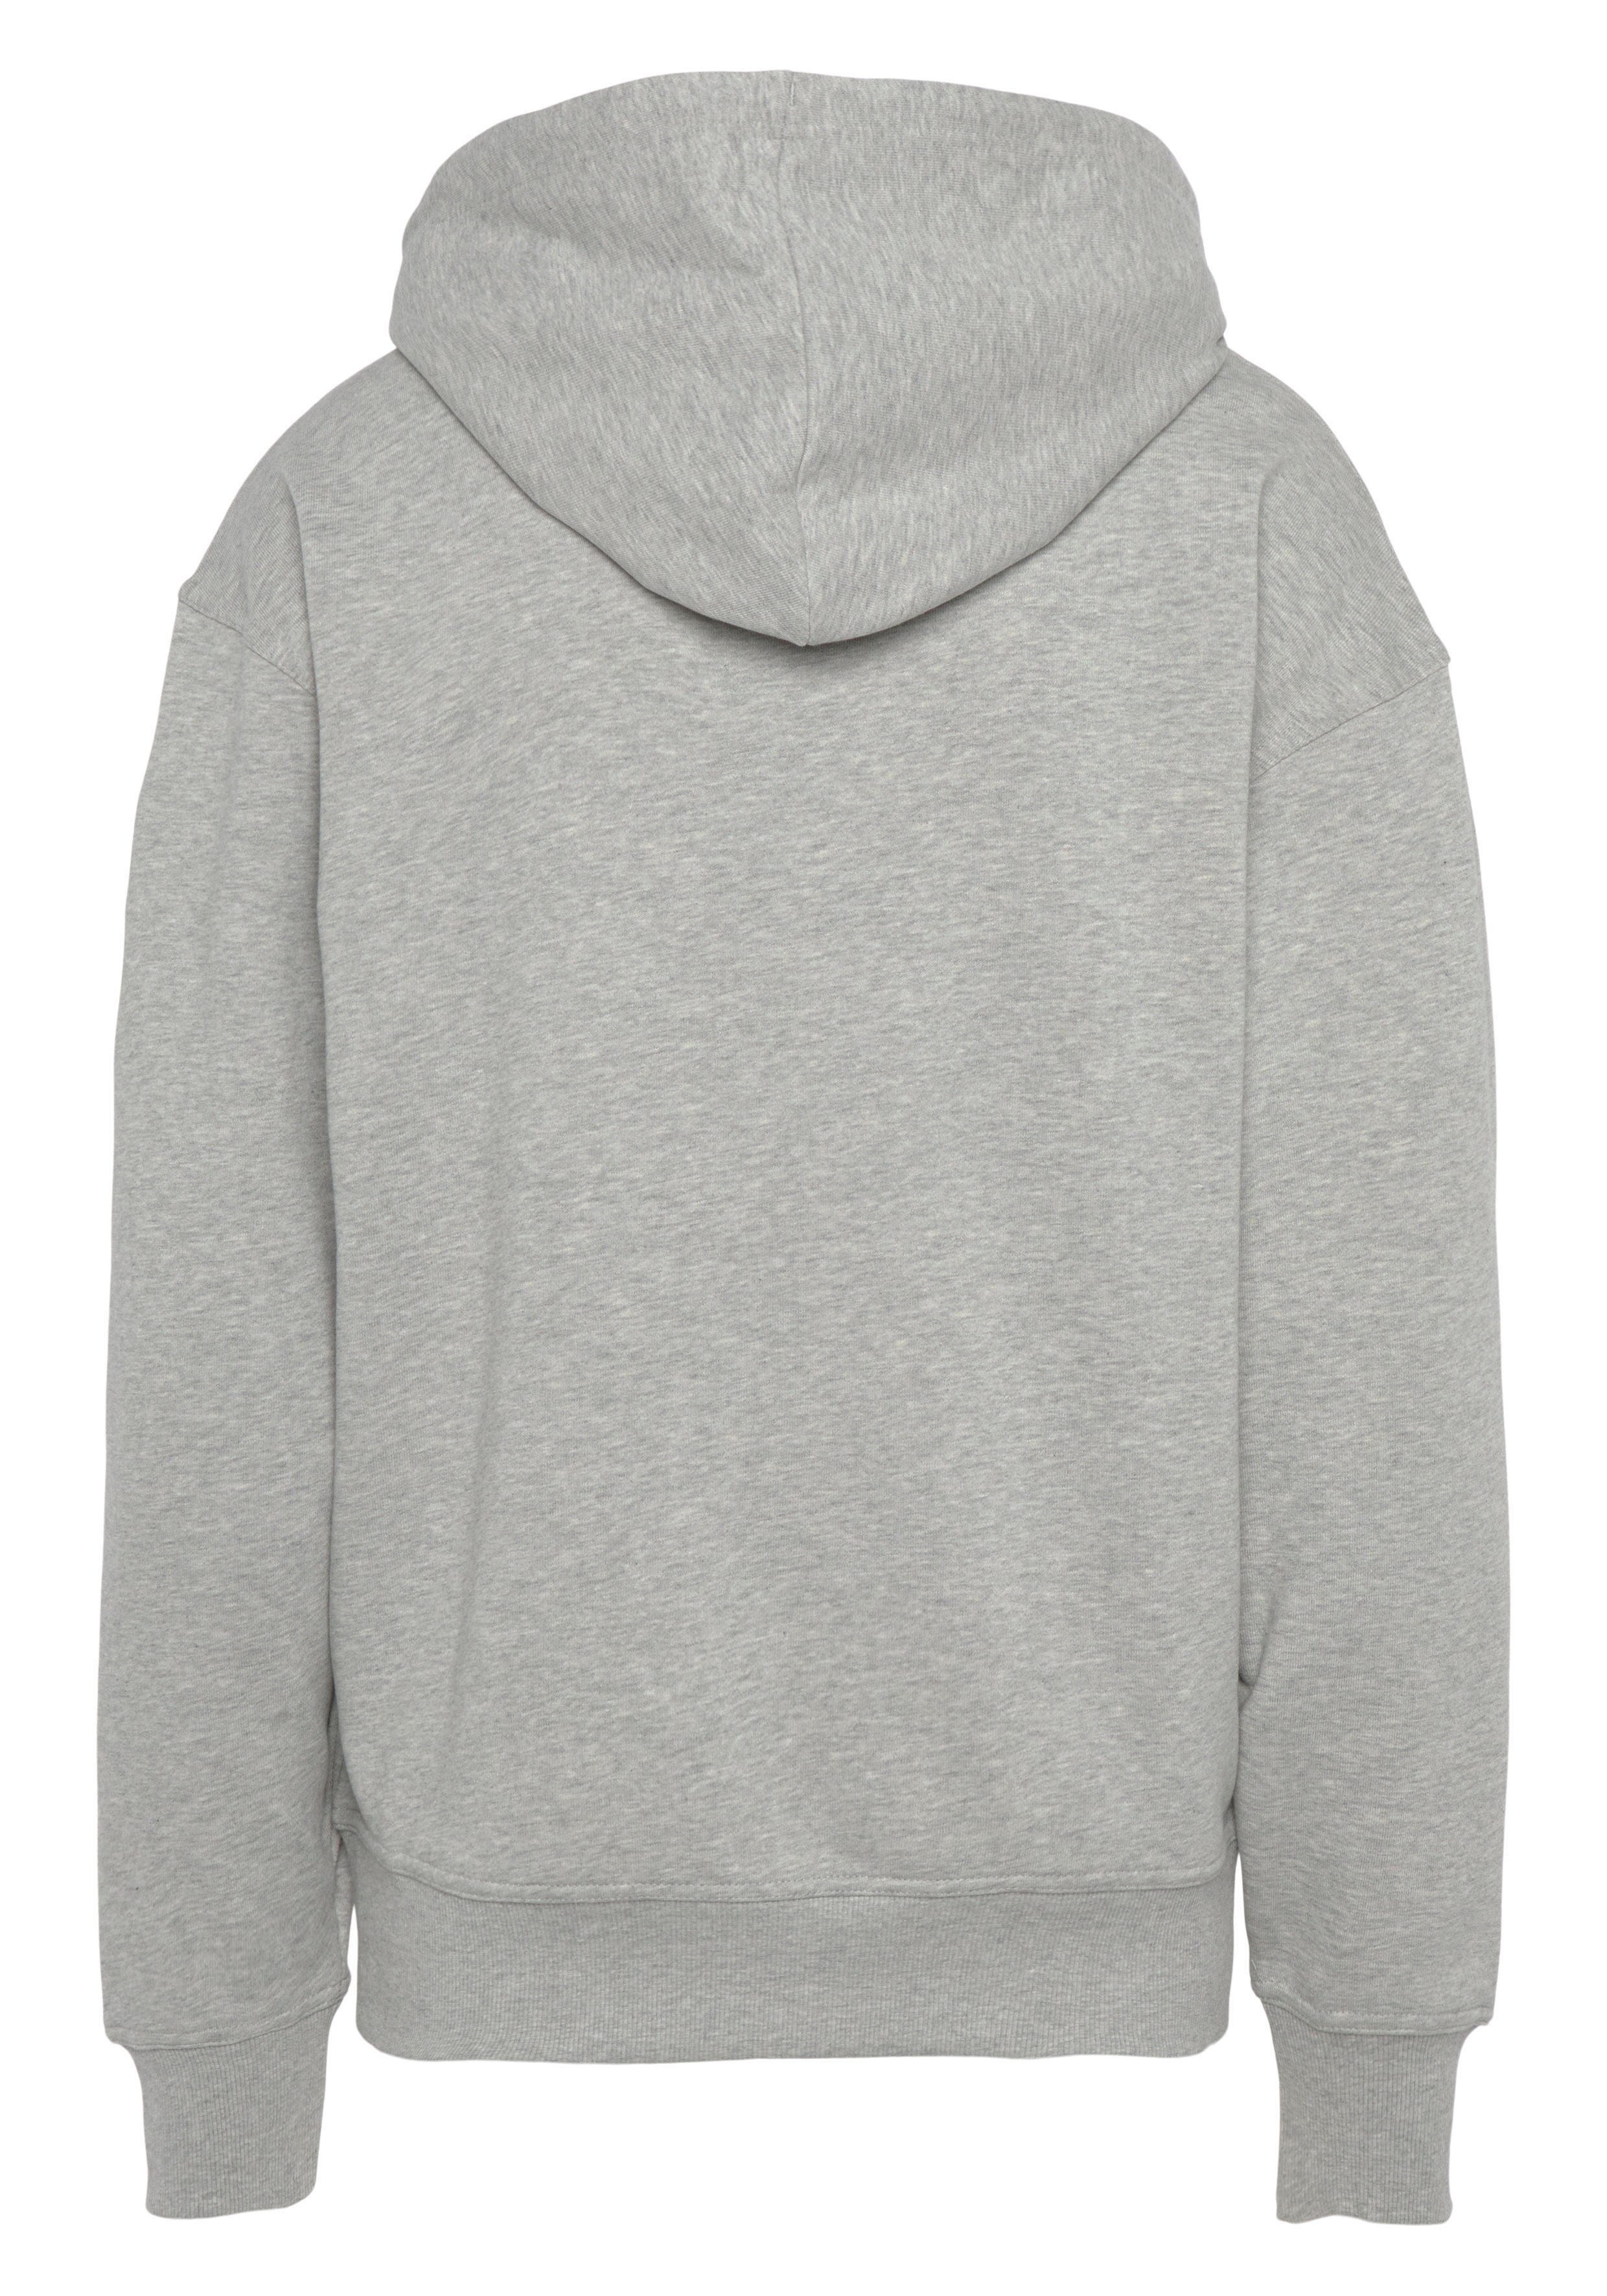 BOSS ORANGE Sweatshirt WebasicHood mit grau Logodruck weißem